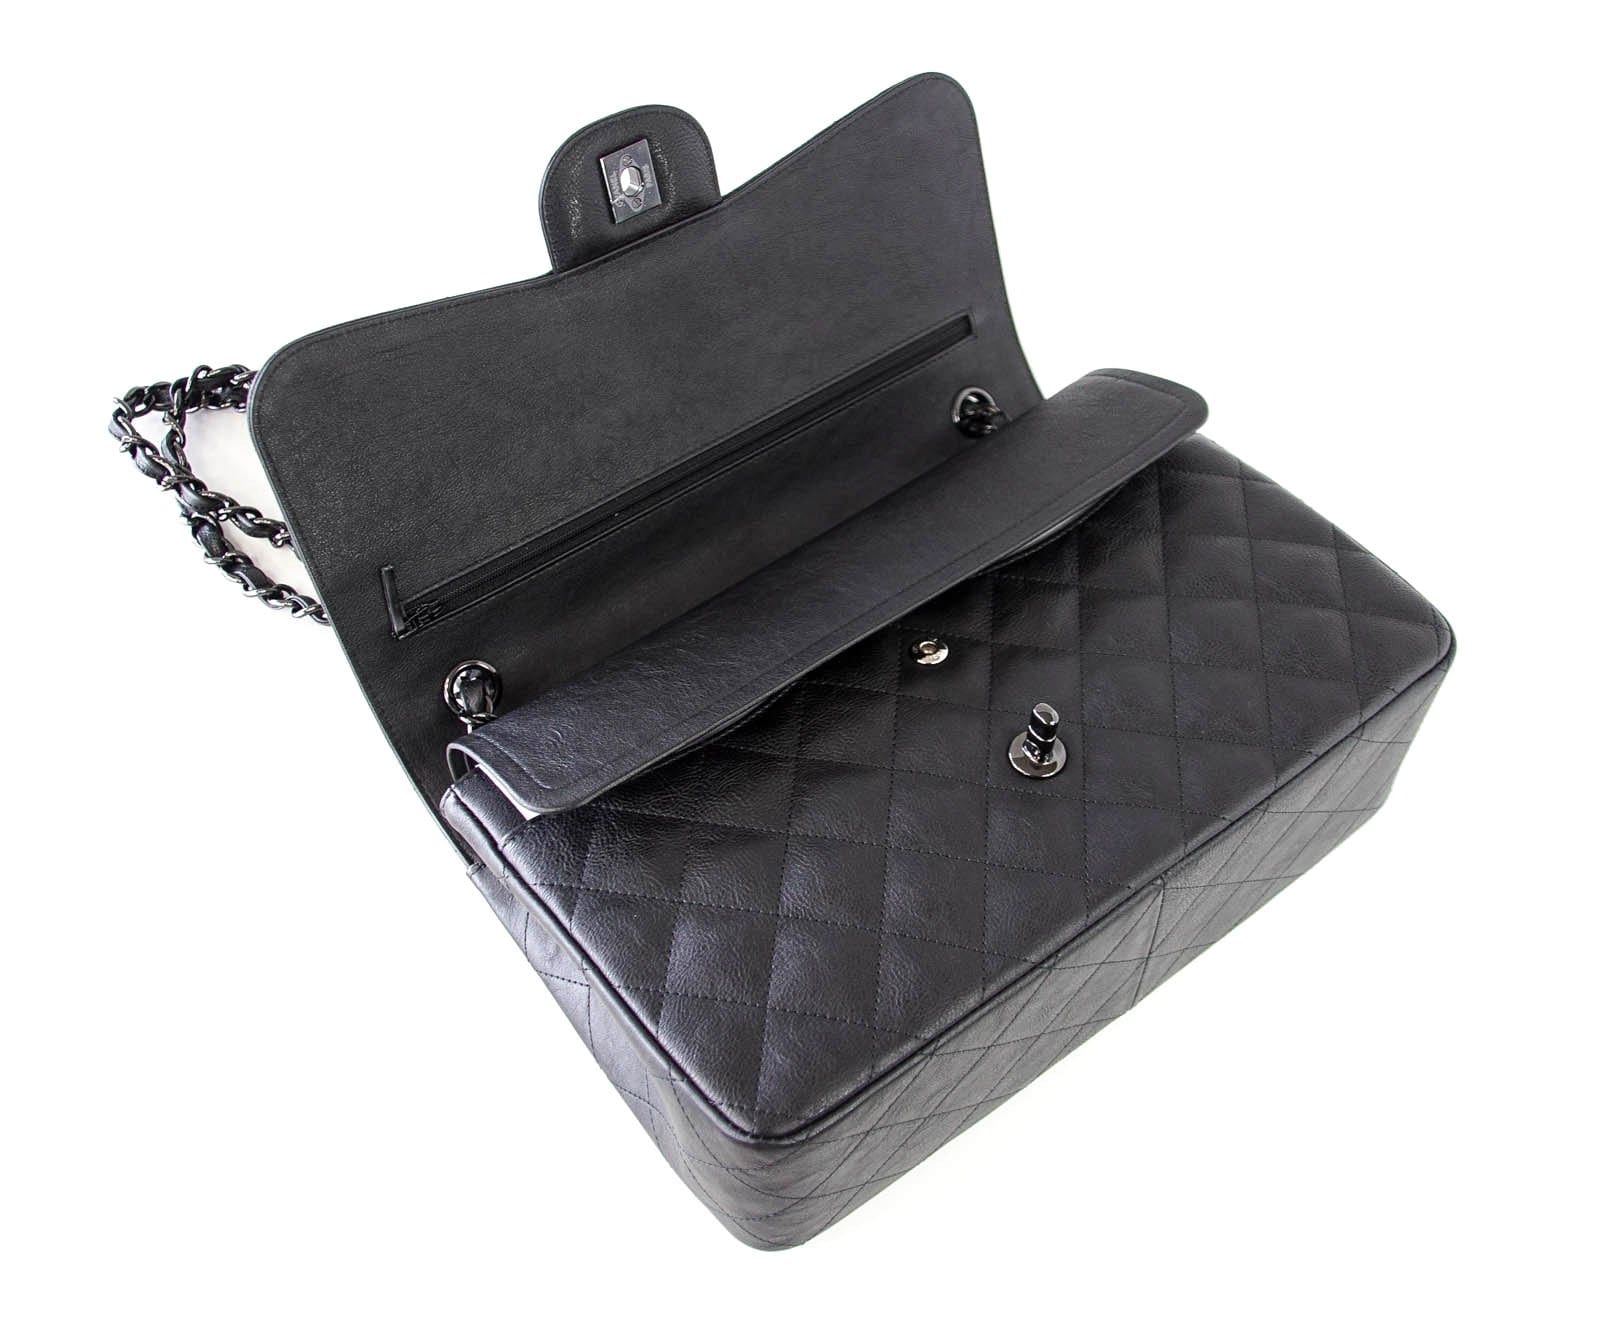 Chanel Large Double Flap Chain Shoulder Bag